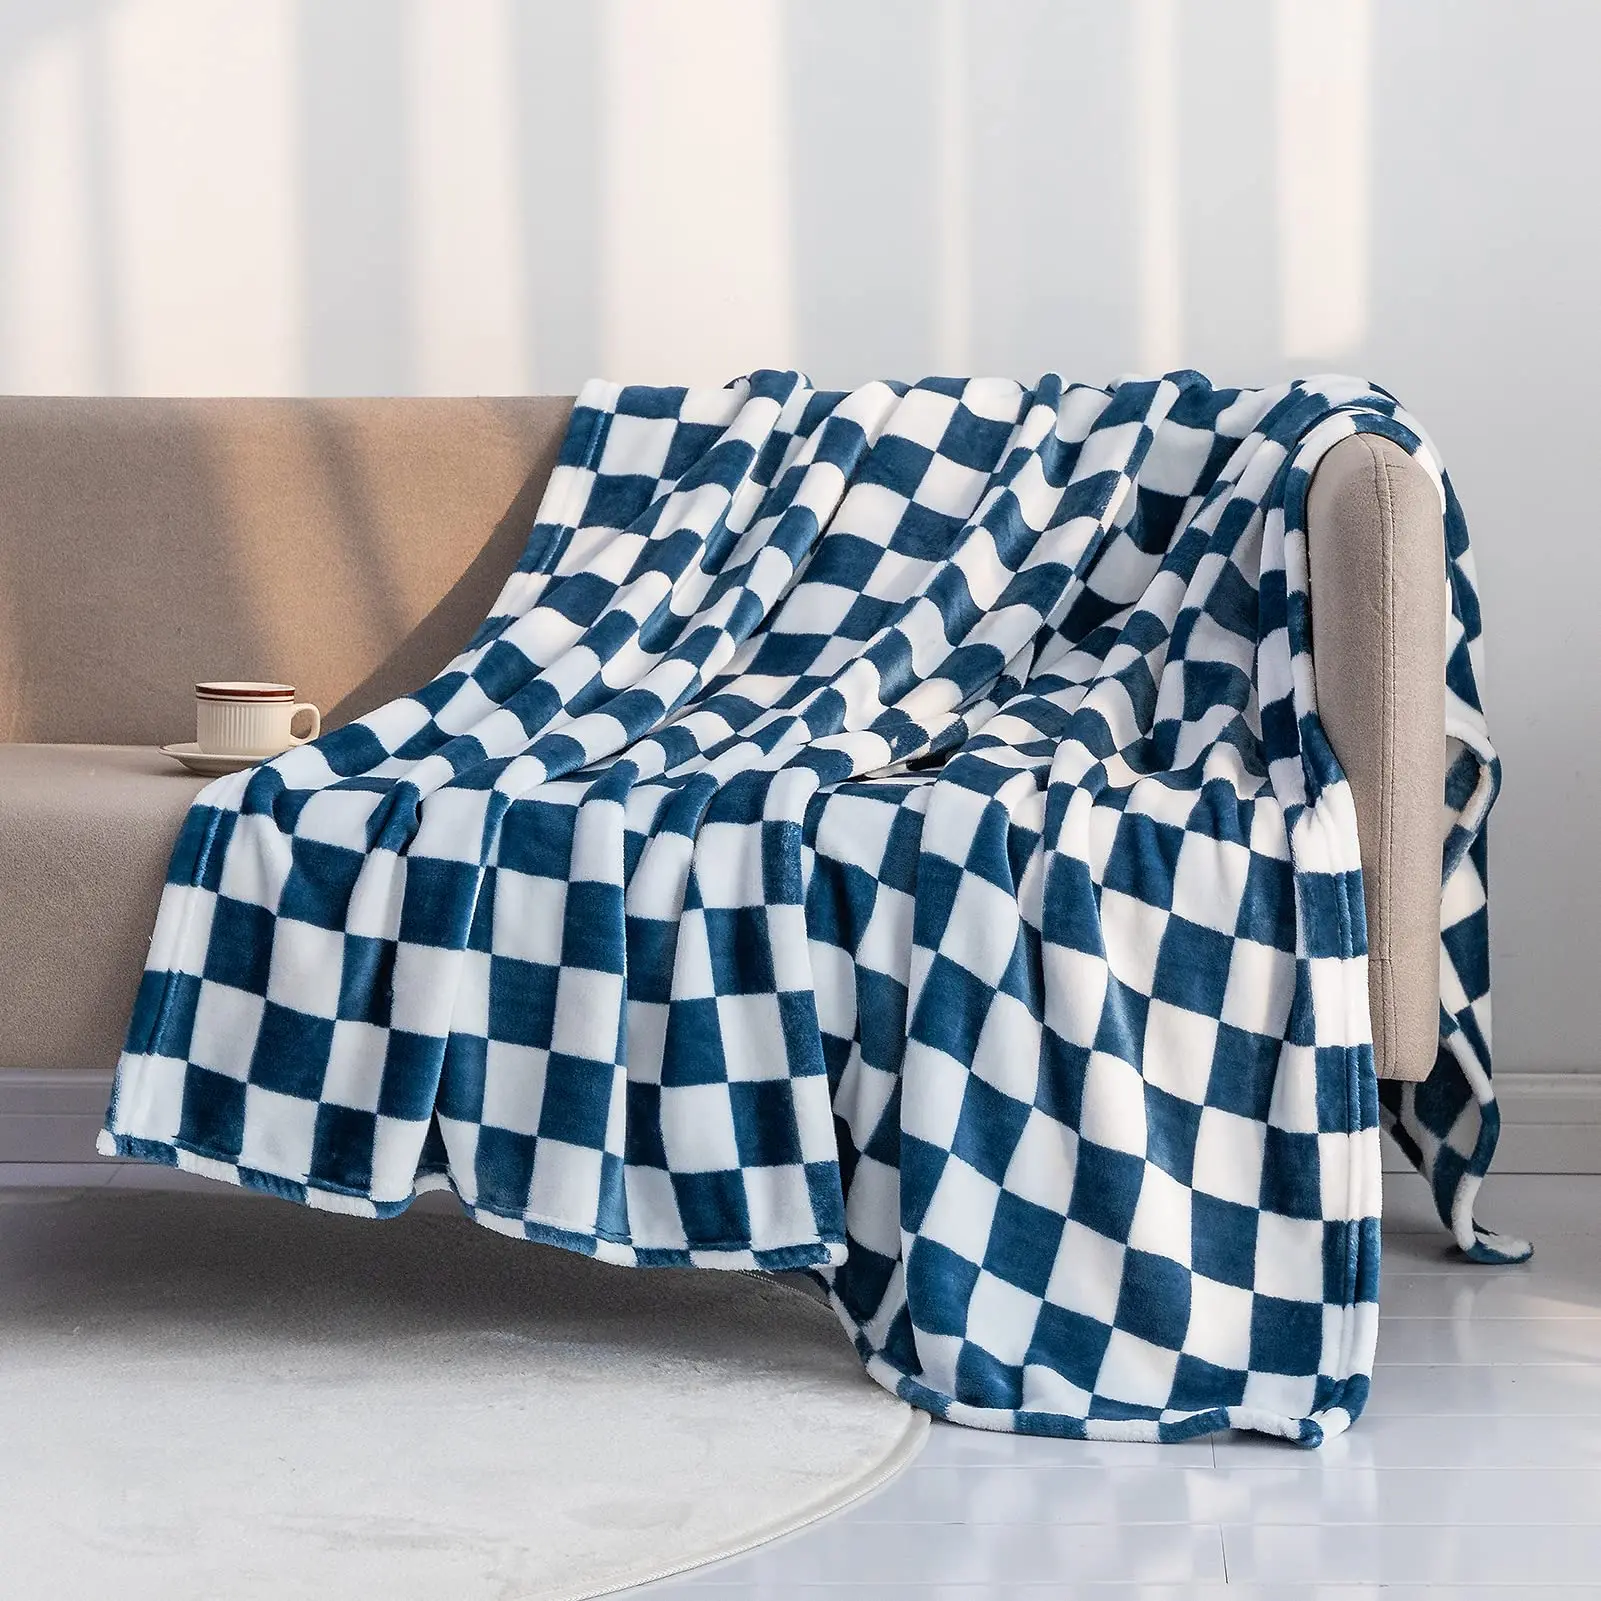 Черно-белое сетчатое одеяло, постельное белье с геометрическим рисунком в клетку, легкое теплое одеяло, пушистое мягкое для кровати, дивана, домашнего декора 1